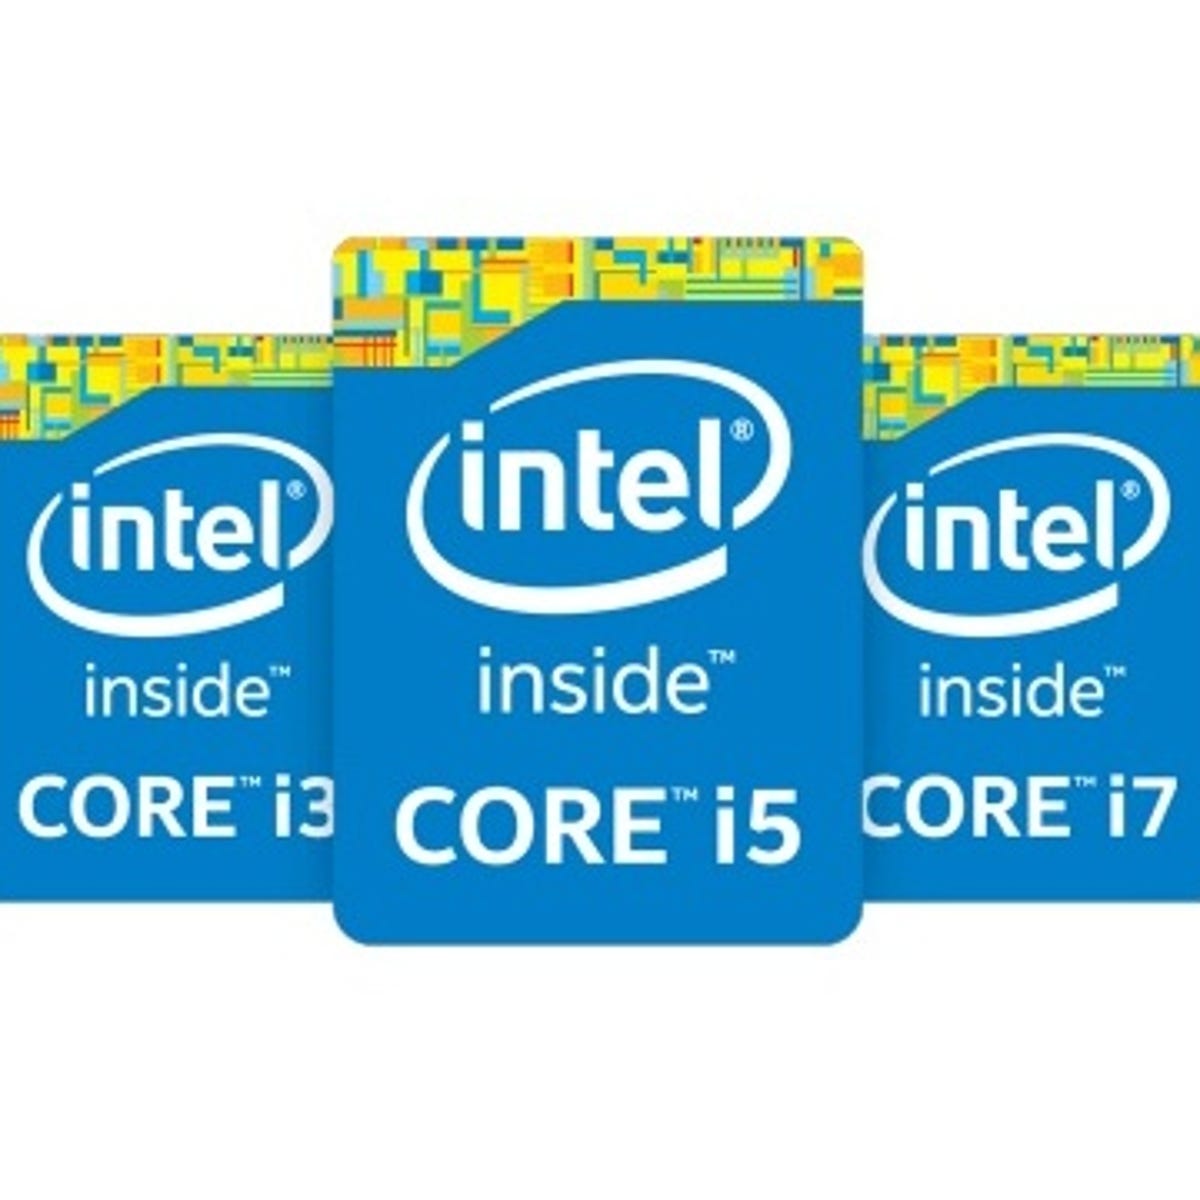 Наклейки intel. Наклейка Core i7 inside. Intel Core i5 3 поколения наклейка. Наклейка Intel Core i7. Логотип Intel Broadwell.